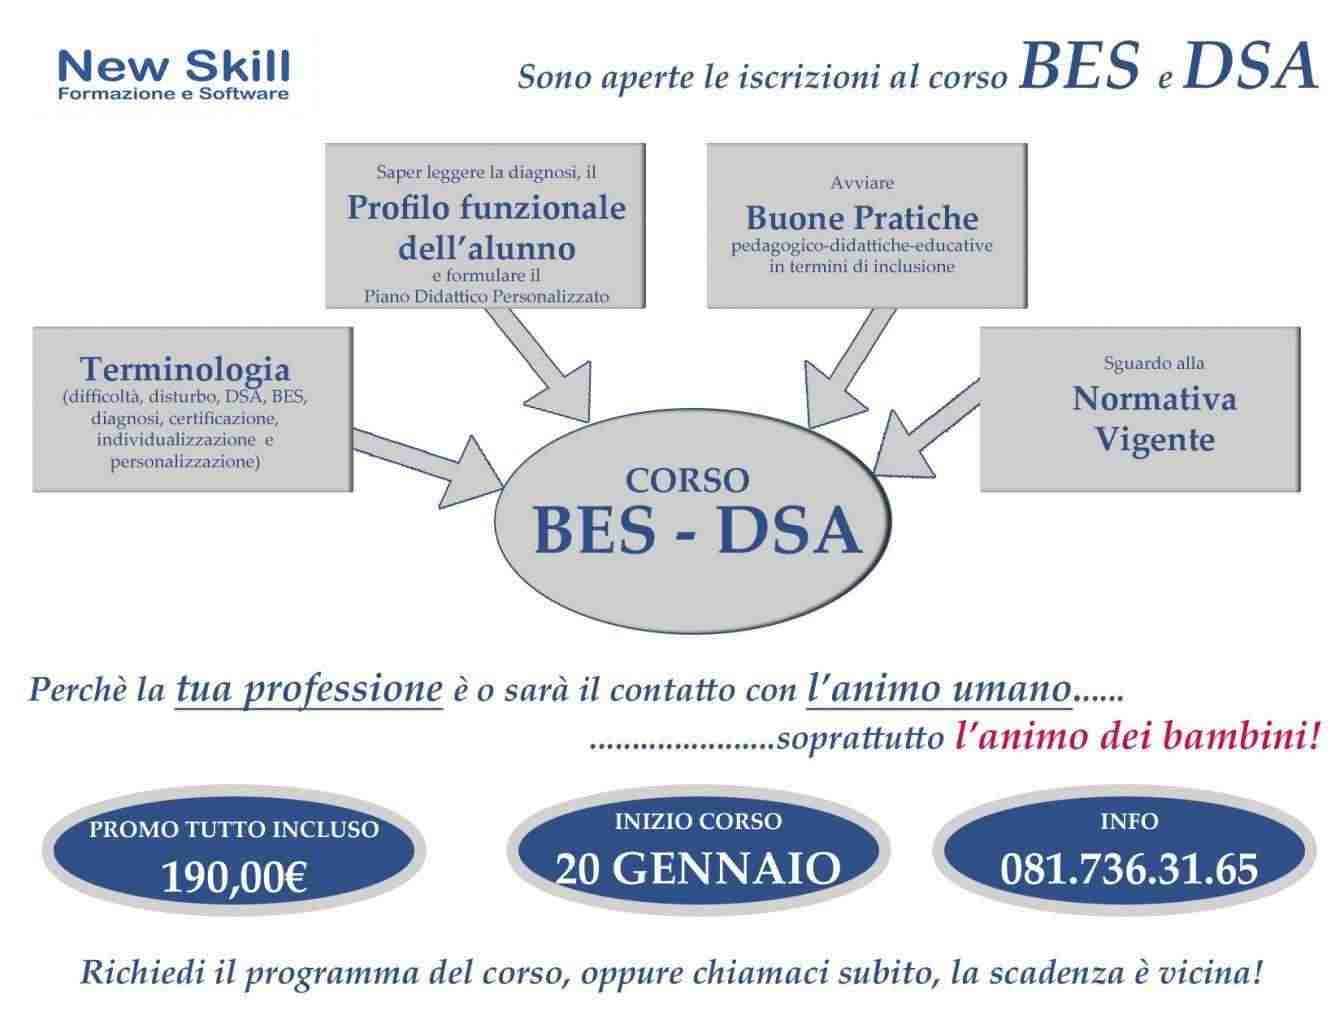 Corso BES - DSA alla New Skill